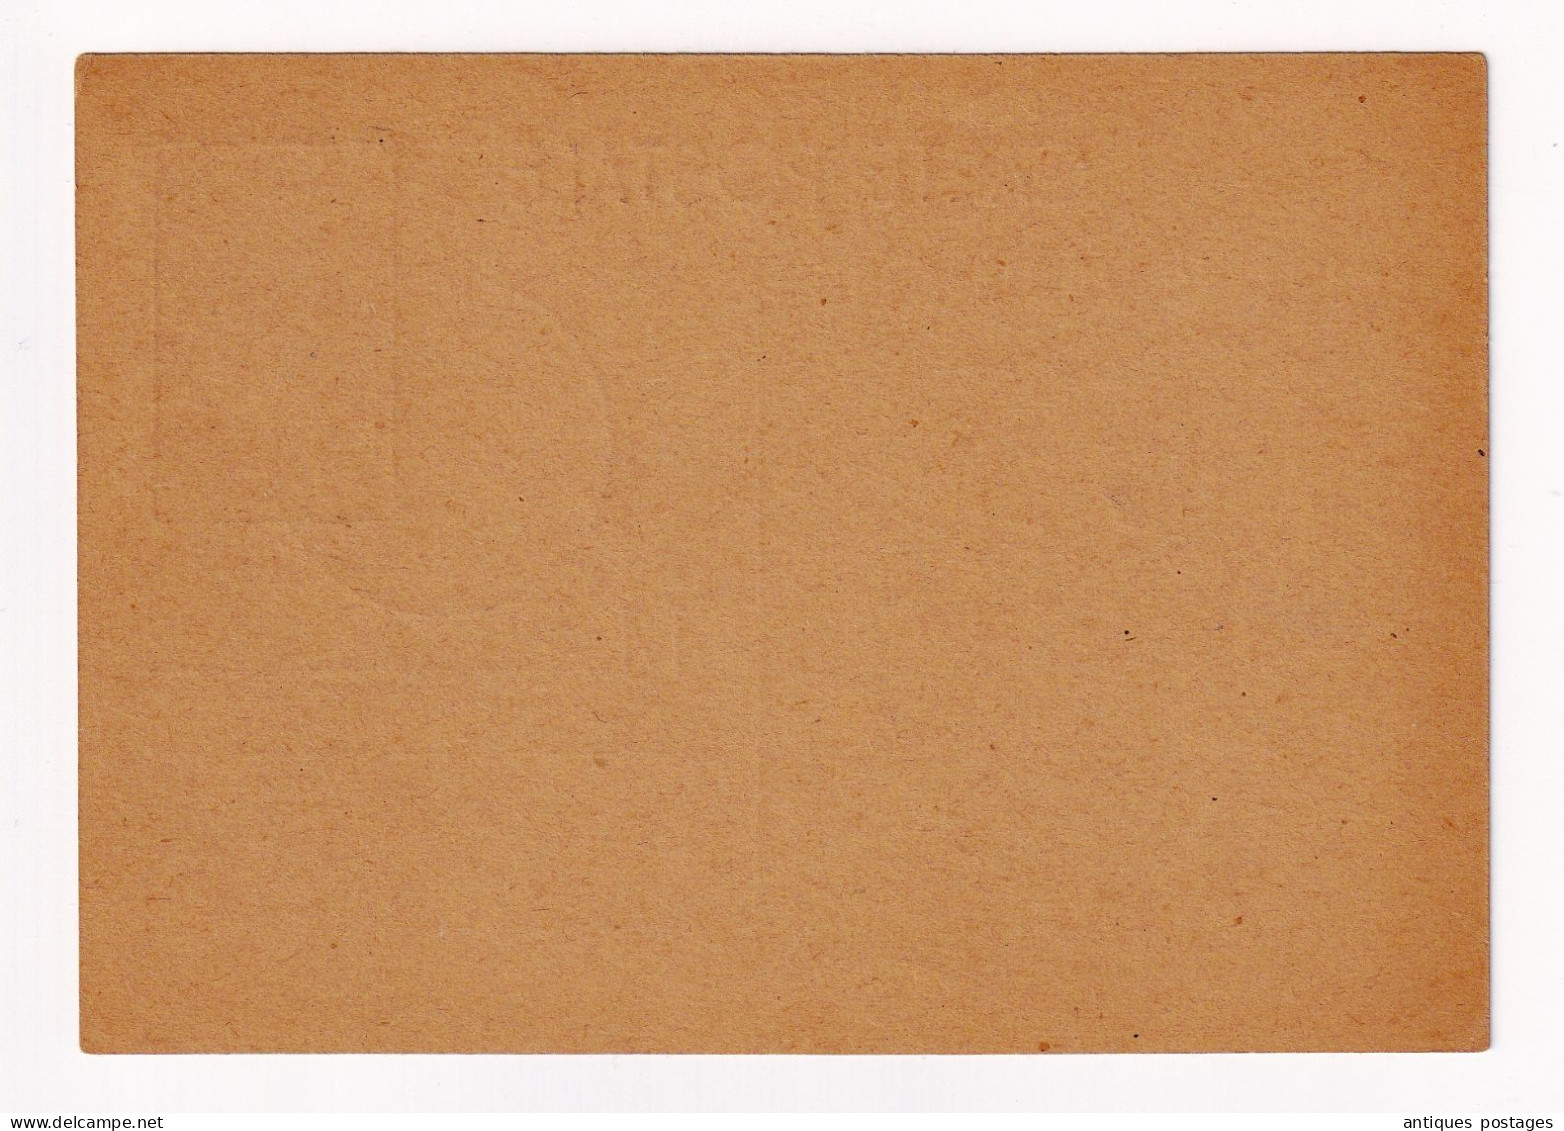 Carte Postale 1945 Foire De Paris Timbre N°338 Souvenir De Jean Mermoz 3F - Covers & Documents